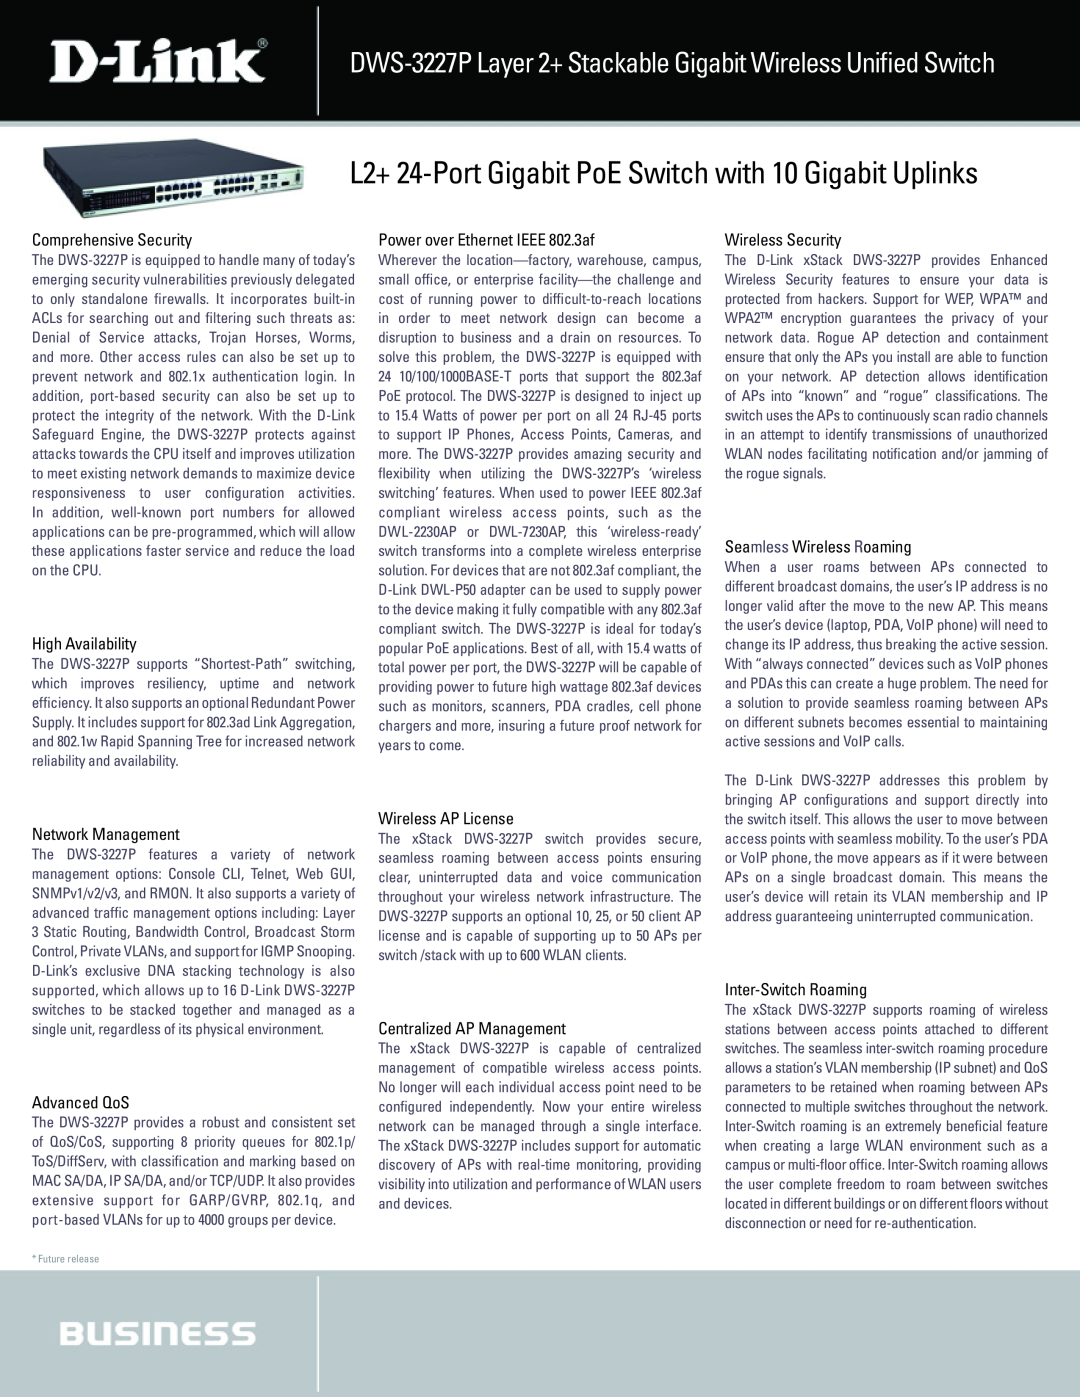 D-Link DWS-3227 manual L2+ 24-Port Gigabit PoE Switch with 10 Gigabit Uplinks, Comprehensive Security 